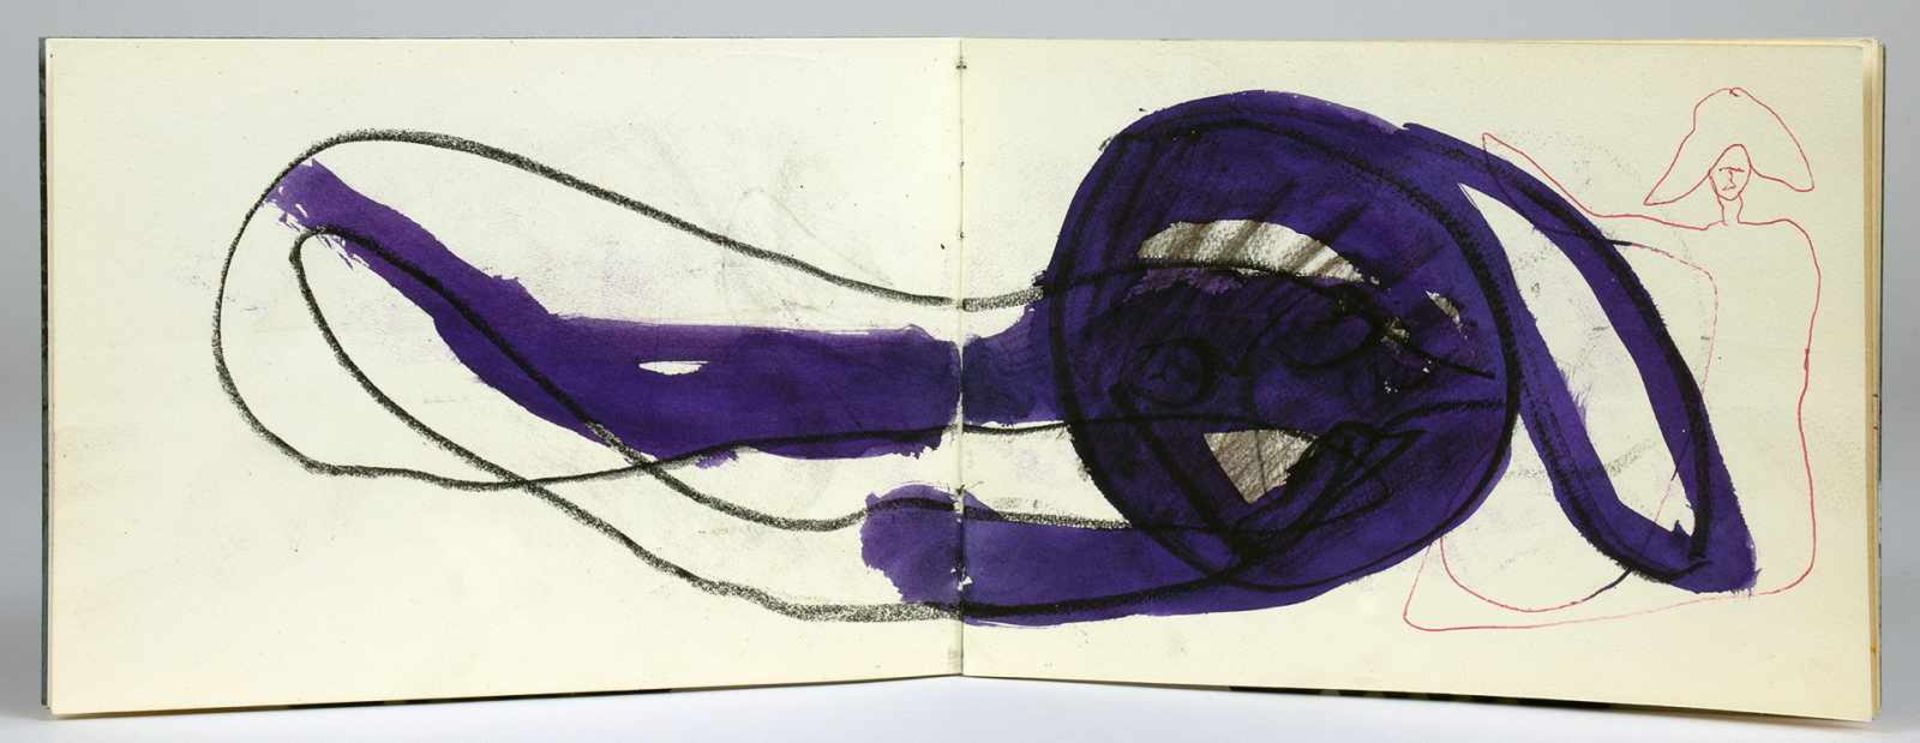 Martin Disler. Fünf Skizzenhefte mit insgesamt etwa 160 Zeichnungen und Aquarellen. 1977-1979. - Bild 4 aus 5